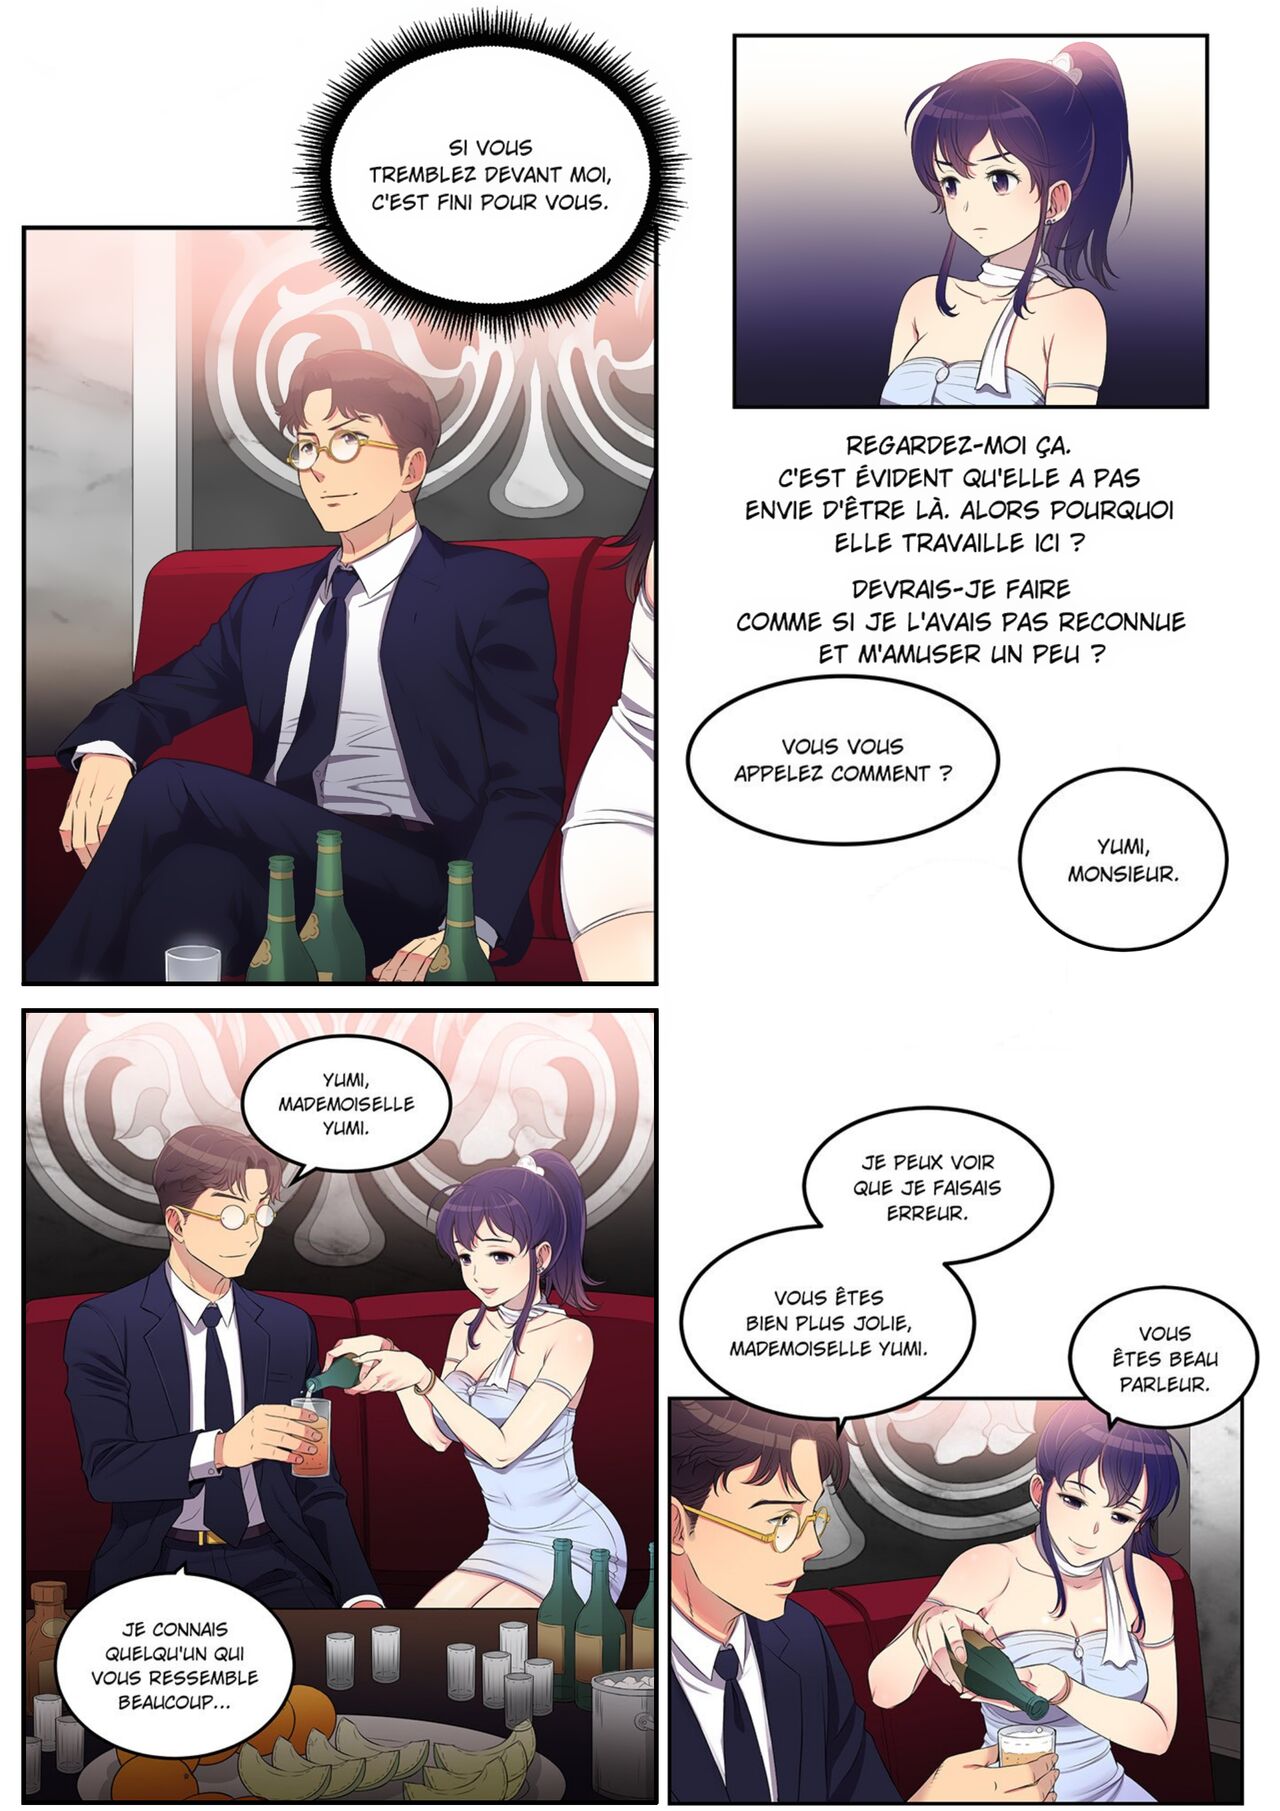 La double vie de Yuri numero d'image 105